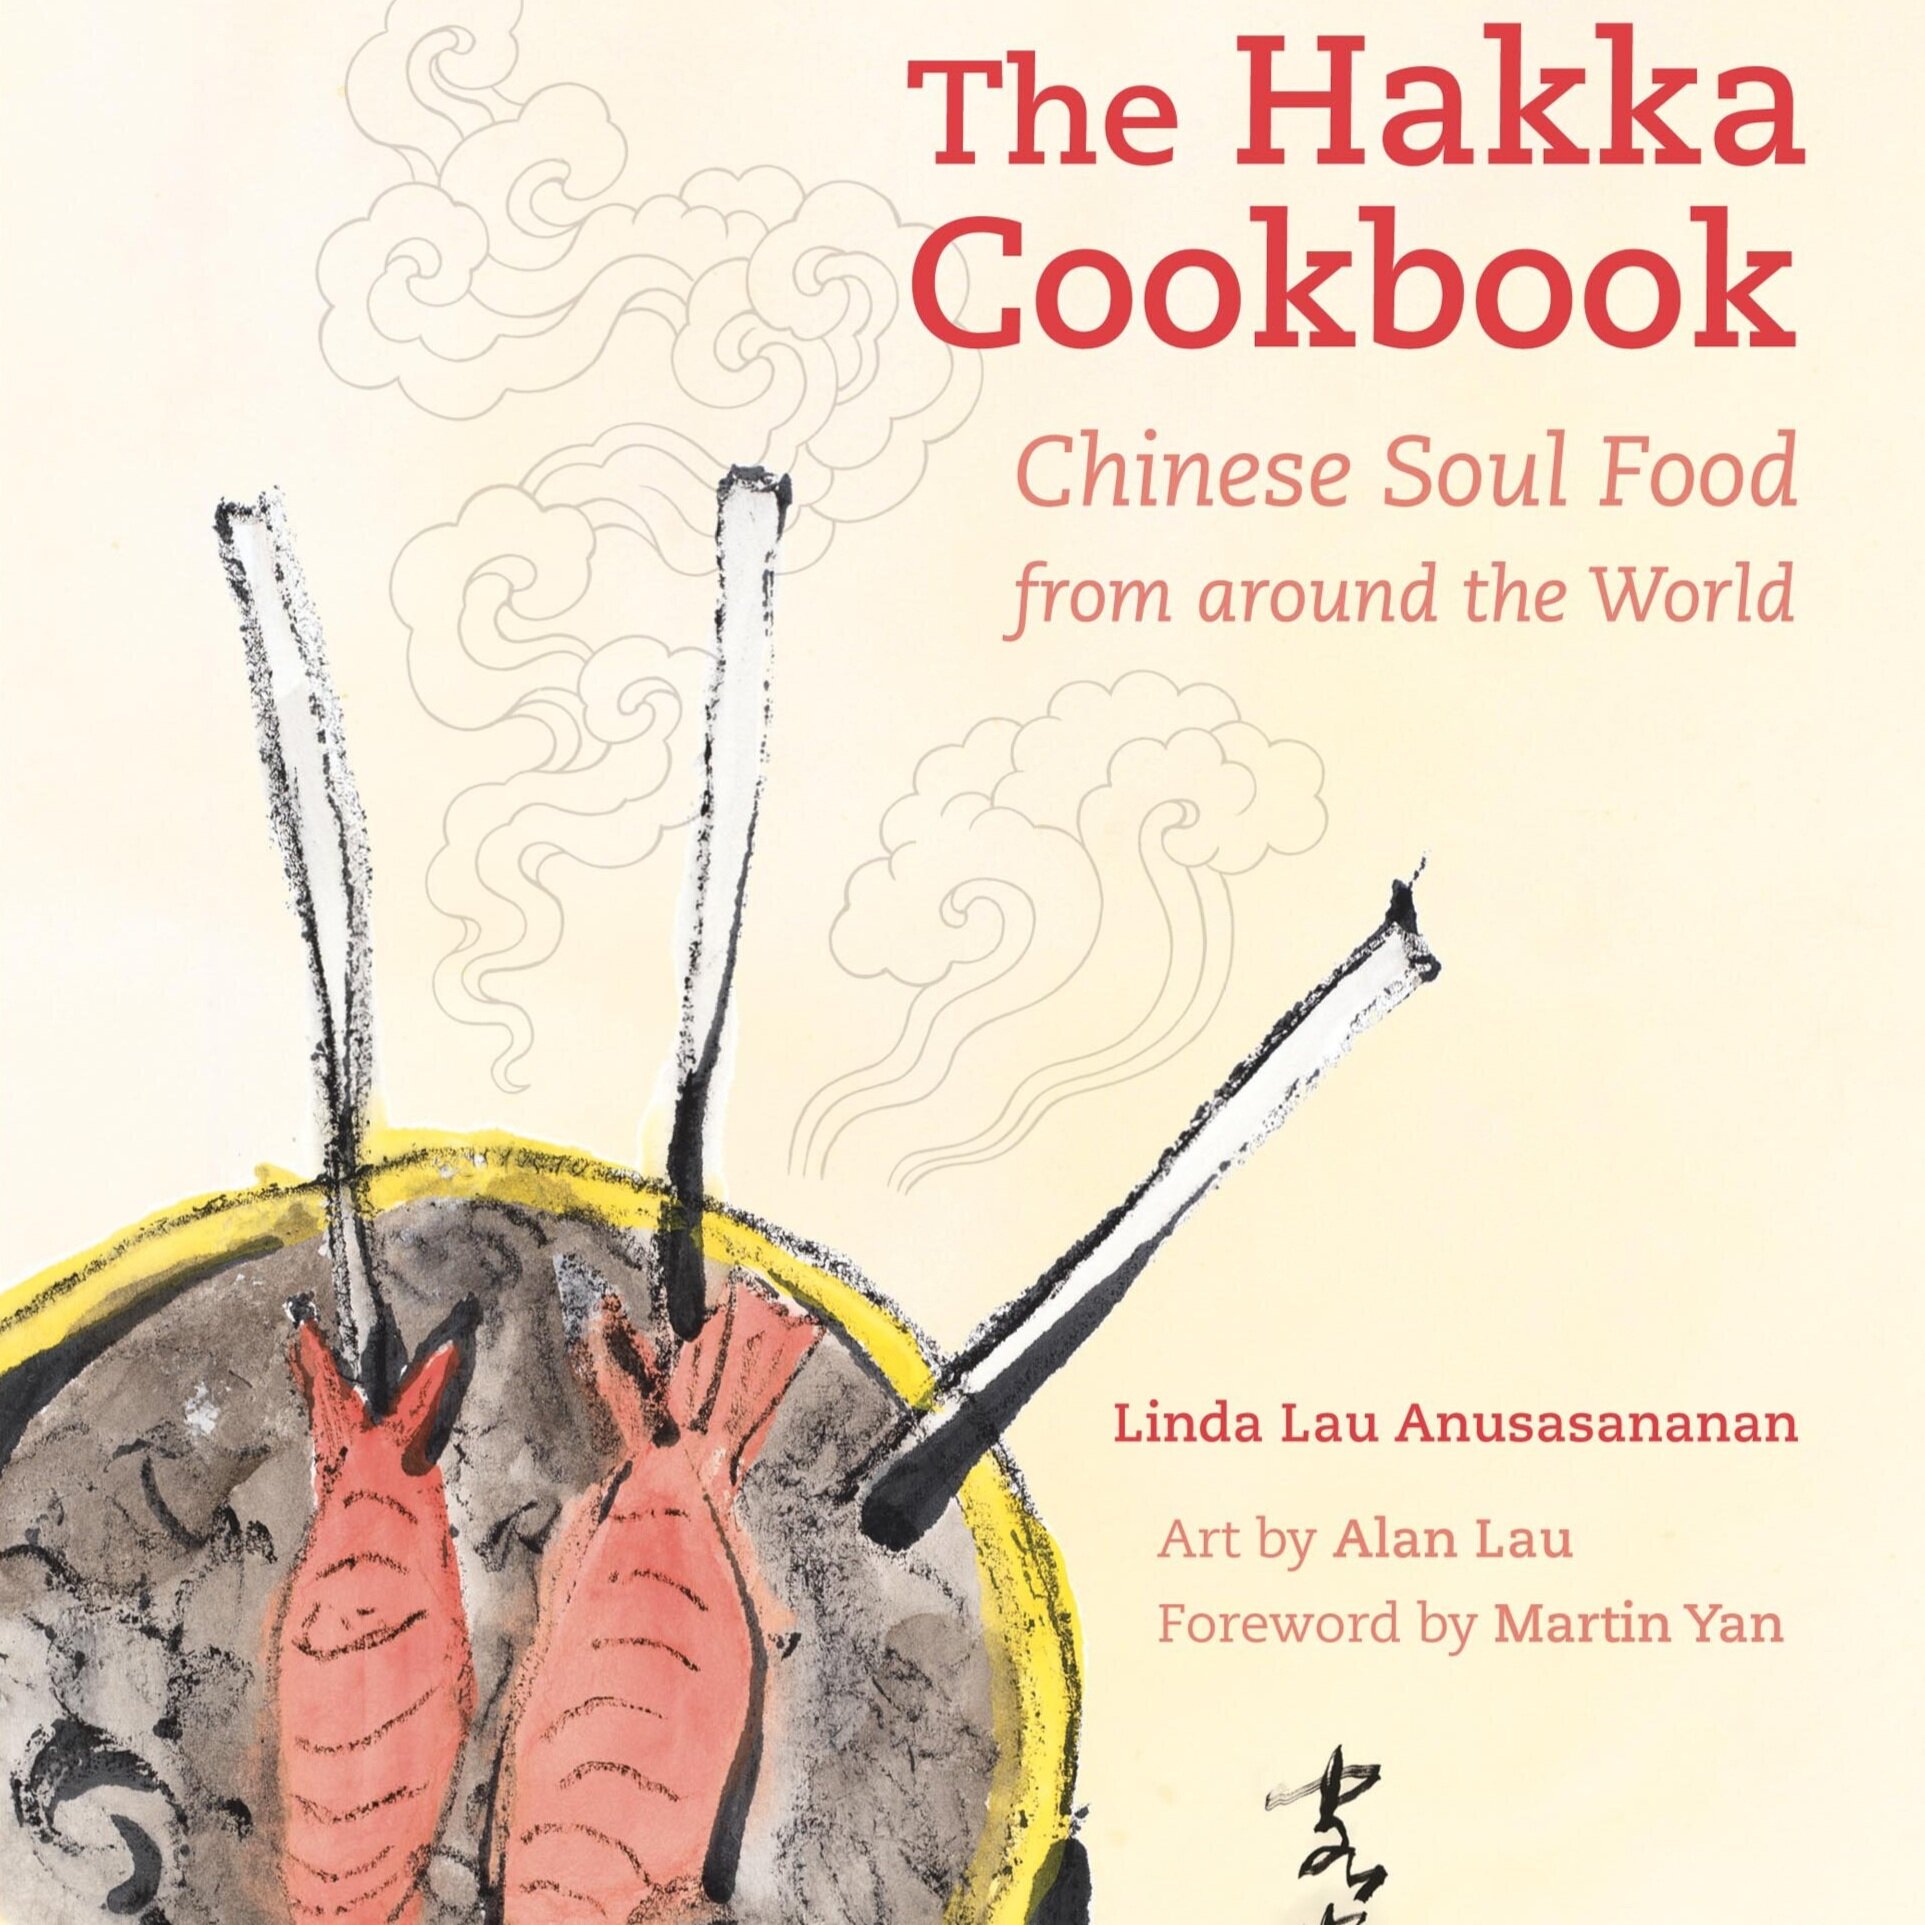 Hakka+cookbookEdited.jpg